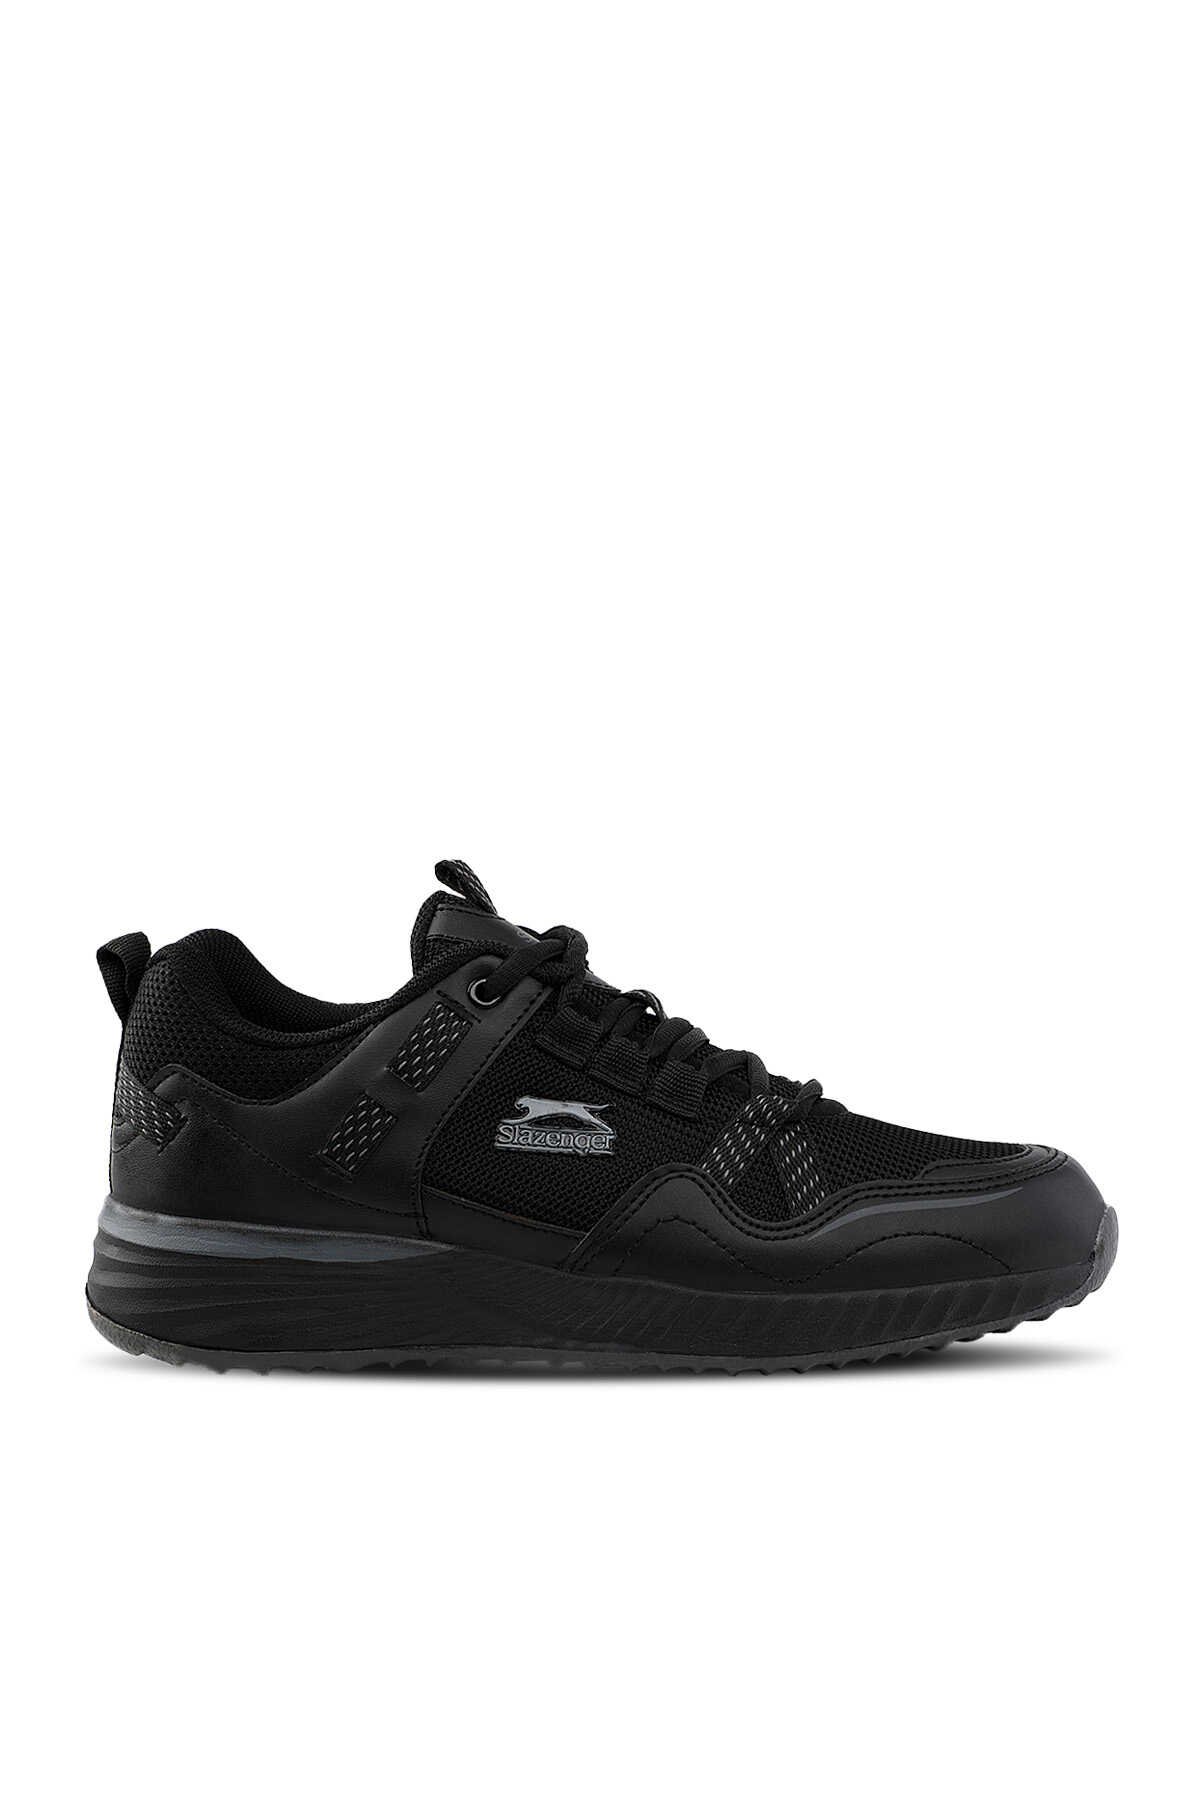 Slazenger - Slazenger BENCH Sneaker Kadın Ayakkabı Siyah / Siyah